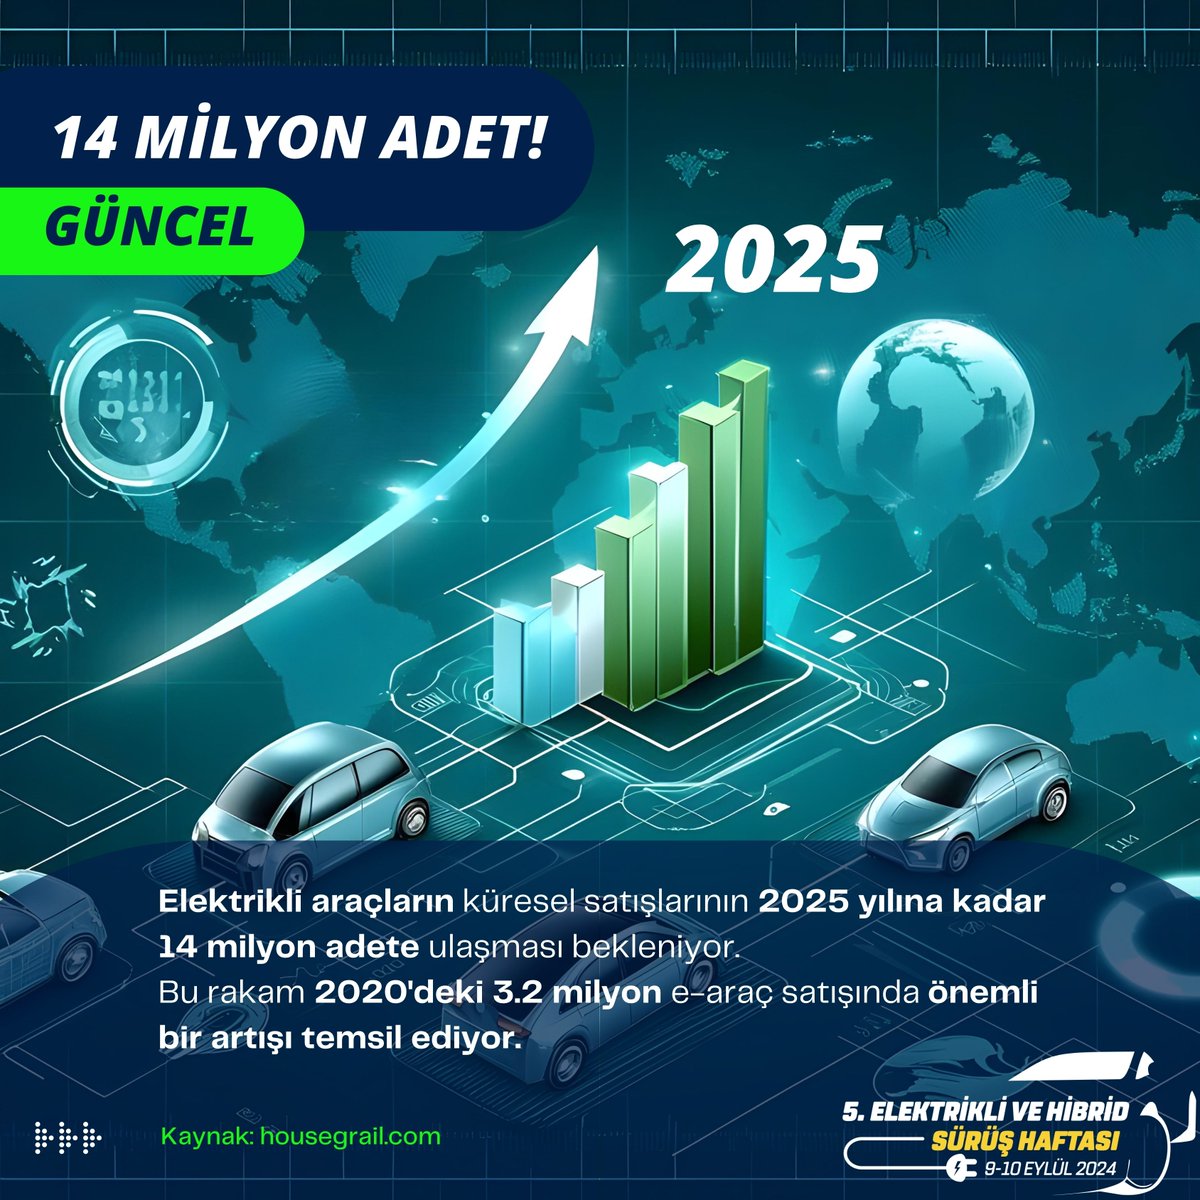 ⚡Elektrikli araçların küresel satışlarının 2025 yılına kadar 14 milyon adete ulaşması bekleniyor, bu rakam 2020'deki 3.2 milyon e-araç satışındaki önemli artışı temsil ediyor​. housegrail.com @ehcars #elektriklisürüşhaftası #elektrikliaraba #electriccars #hybrid